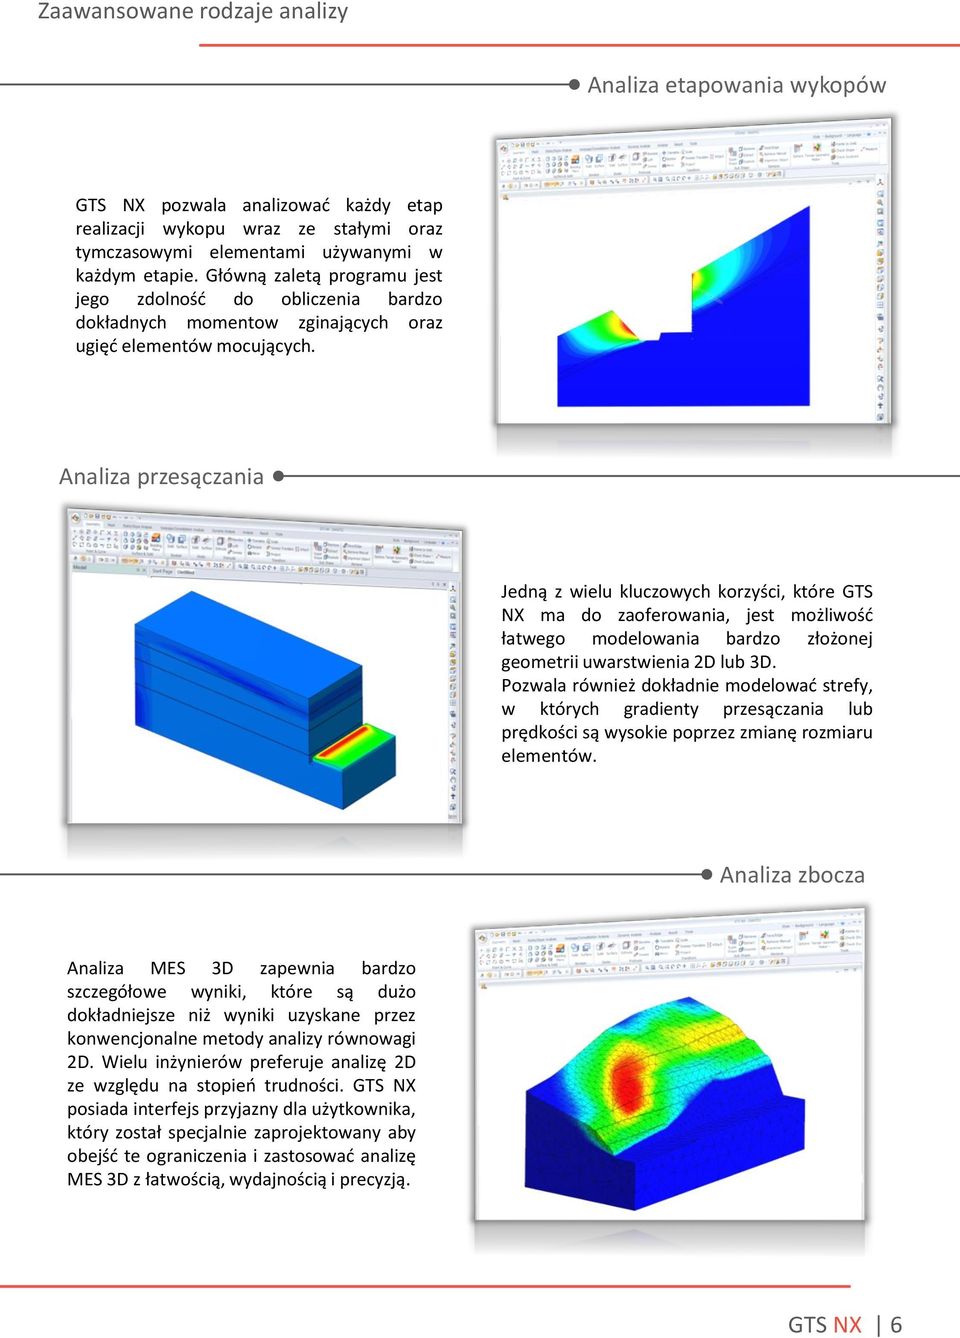 Analiza przesączania Jedną z wielu kluczowych korzyści, które GTS NX ma do zaoferowania, jest możliwość łatwego modelowania bardzo złożonej geometrii uwarstwienia 2D lub 3D.